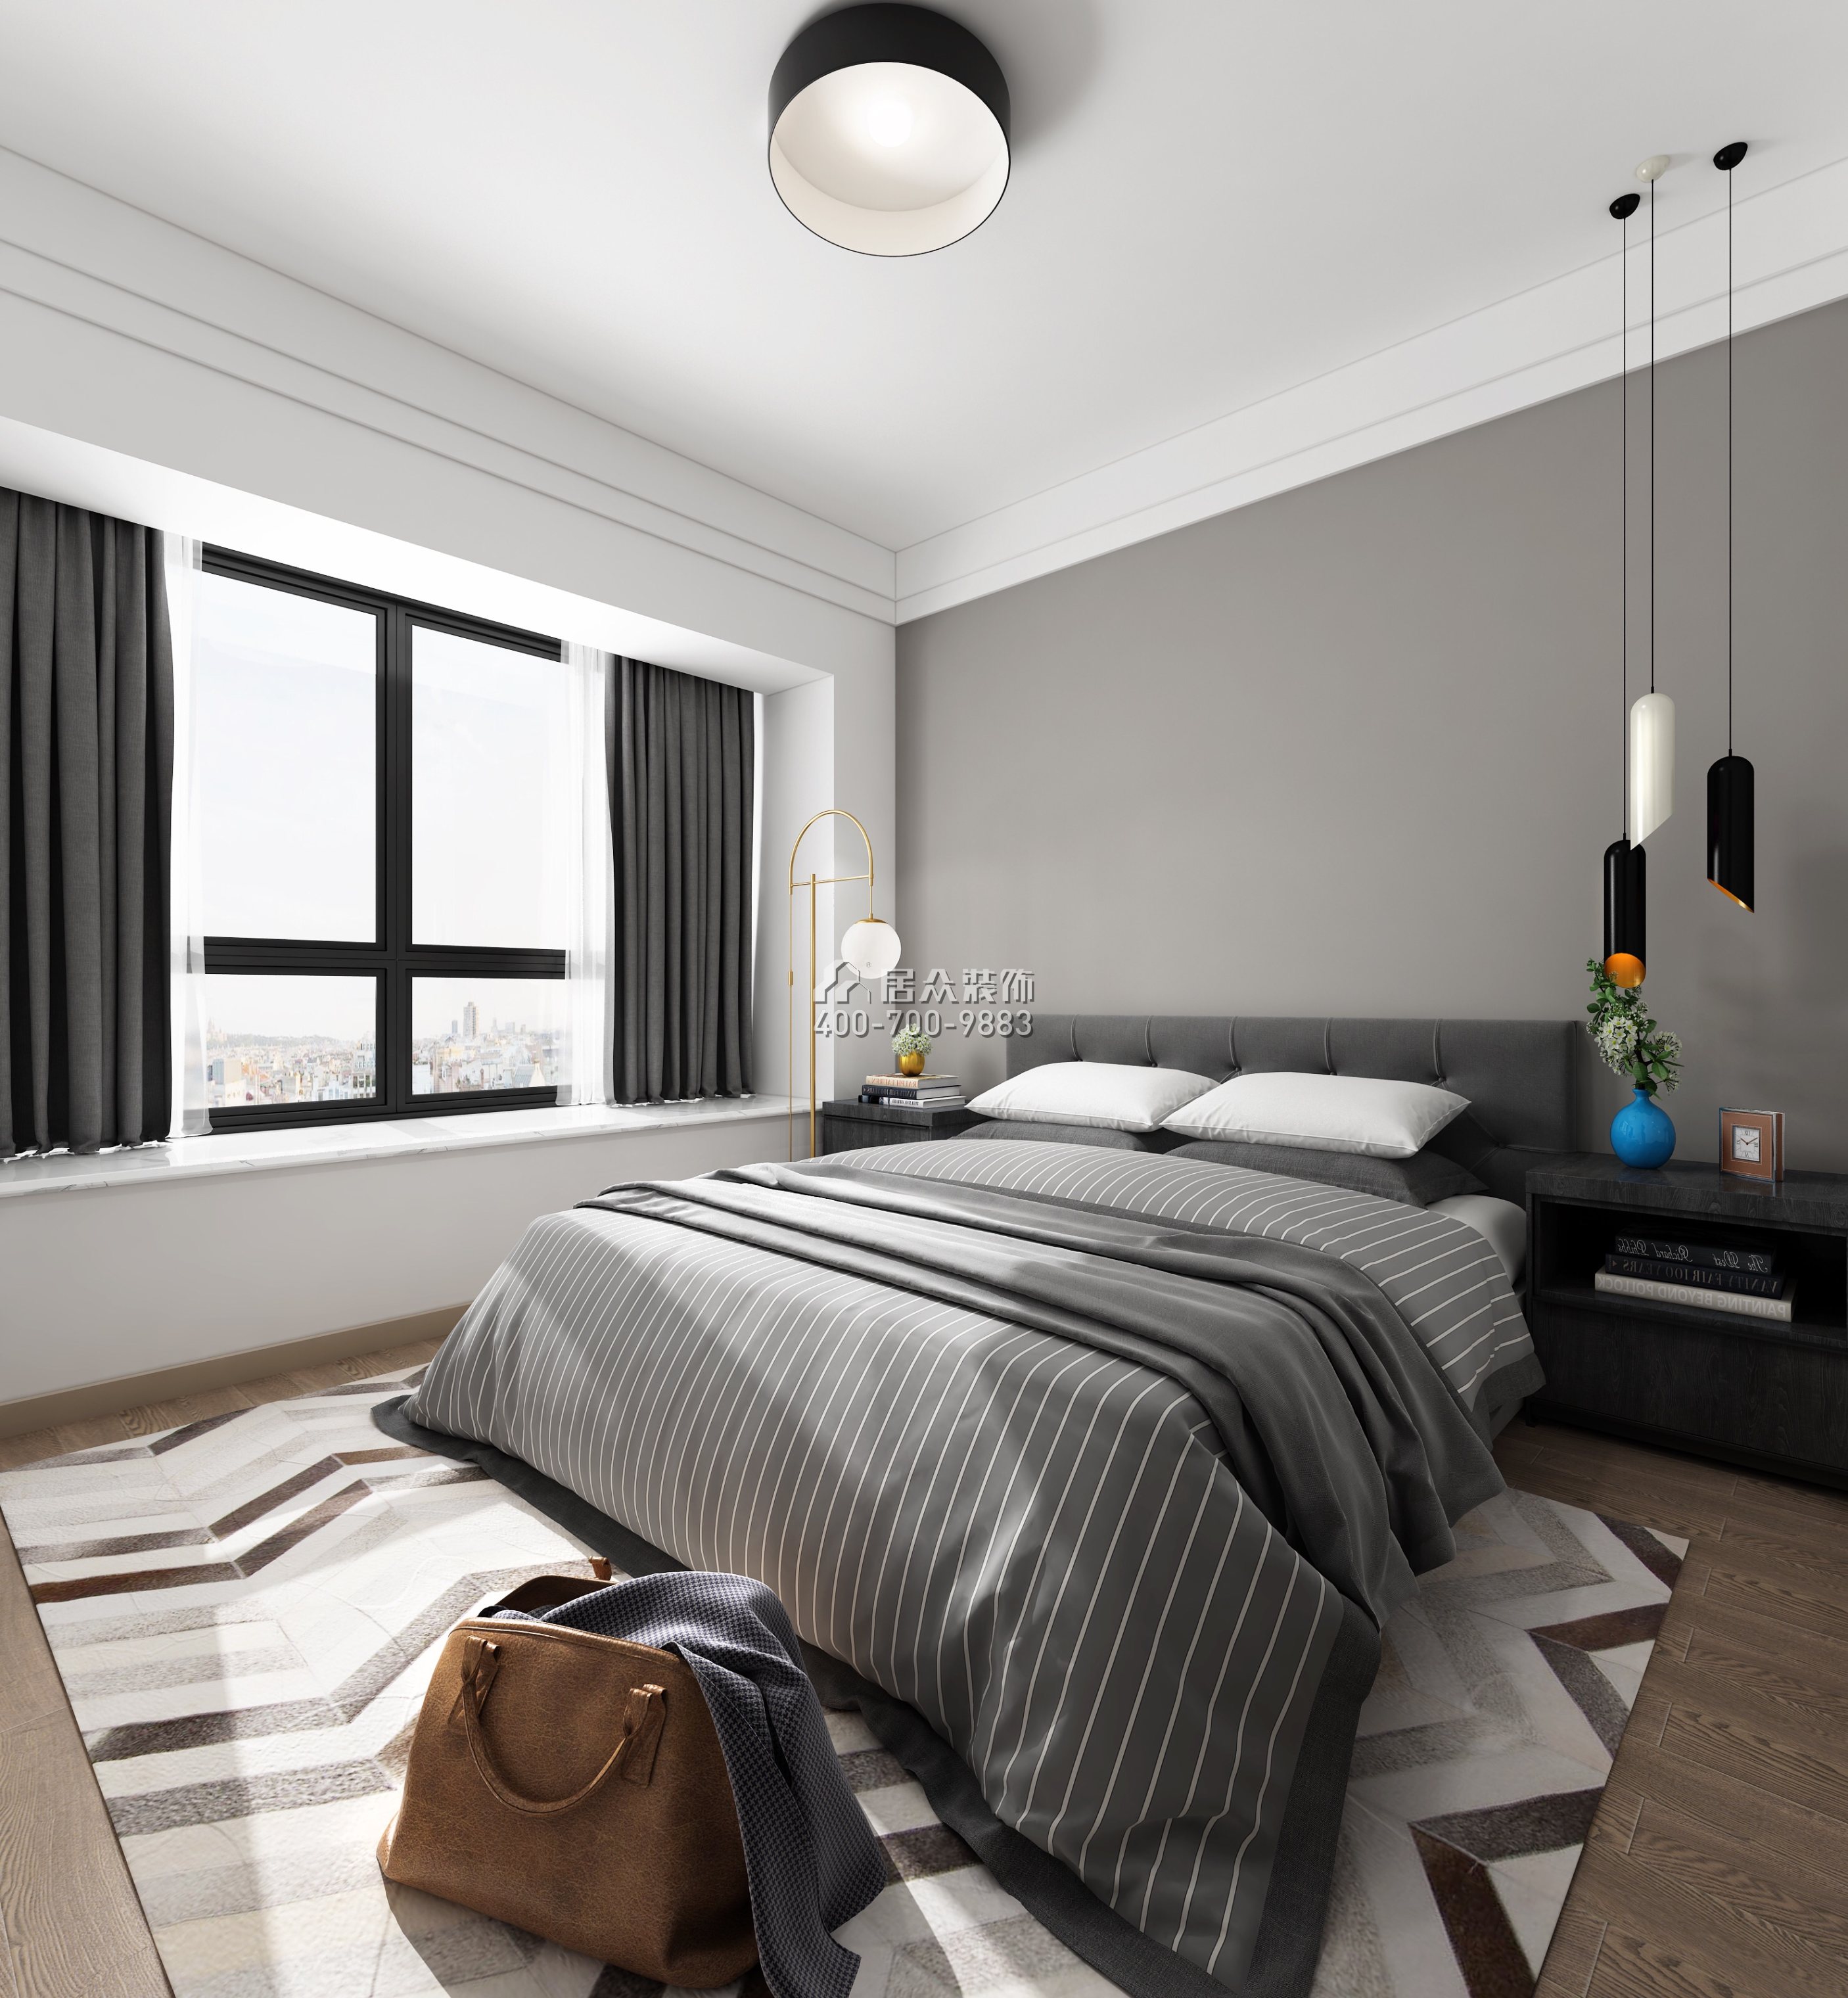 华发峰景湾216平方米北欧风格平层户型卧室装修效果图